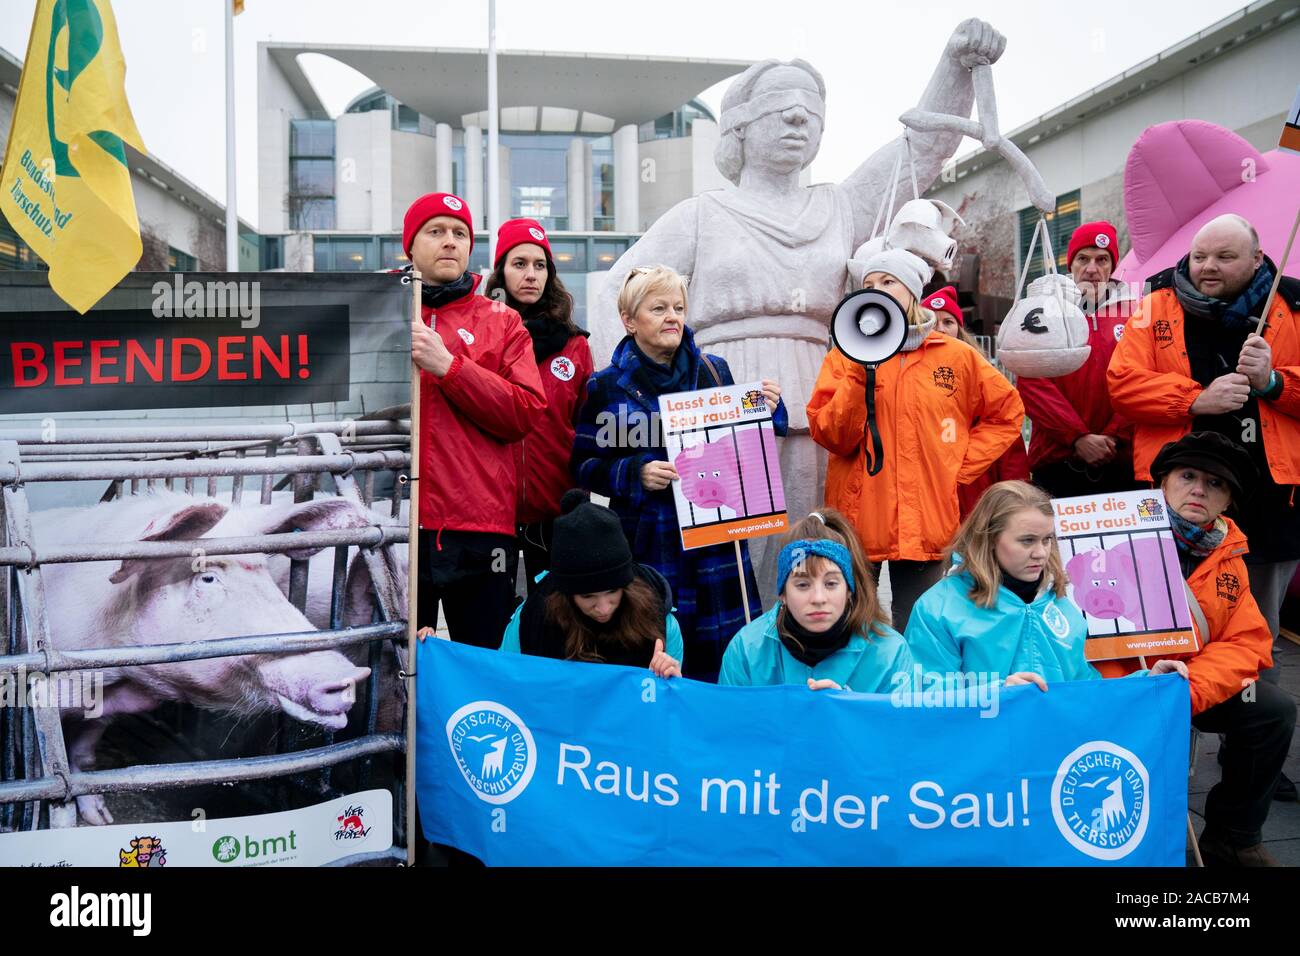 02 dicembre 2019, Berlin: Renate Künast, membro del Bundestag del Bündnis 90/Die Grünen, prende parte a una dimostrazione di attivisti per i diritti degli animali a margine del "Vertice Agricolo' nella parte anteriore della Cancelleria federale. I manifesti con le scritte "Raus mit der Sau' e 'Lasst die Sau raus' sono tenute fino. Foto: Kay Nietfeld/dpa Foto Stock